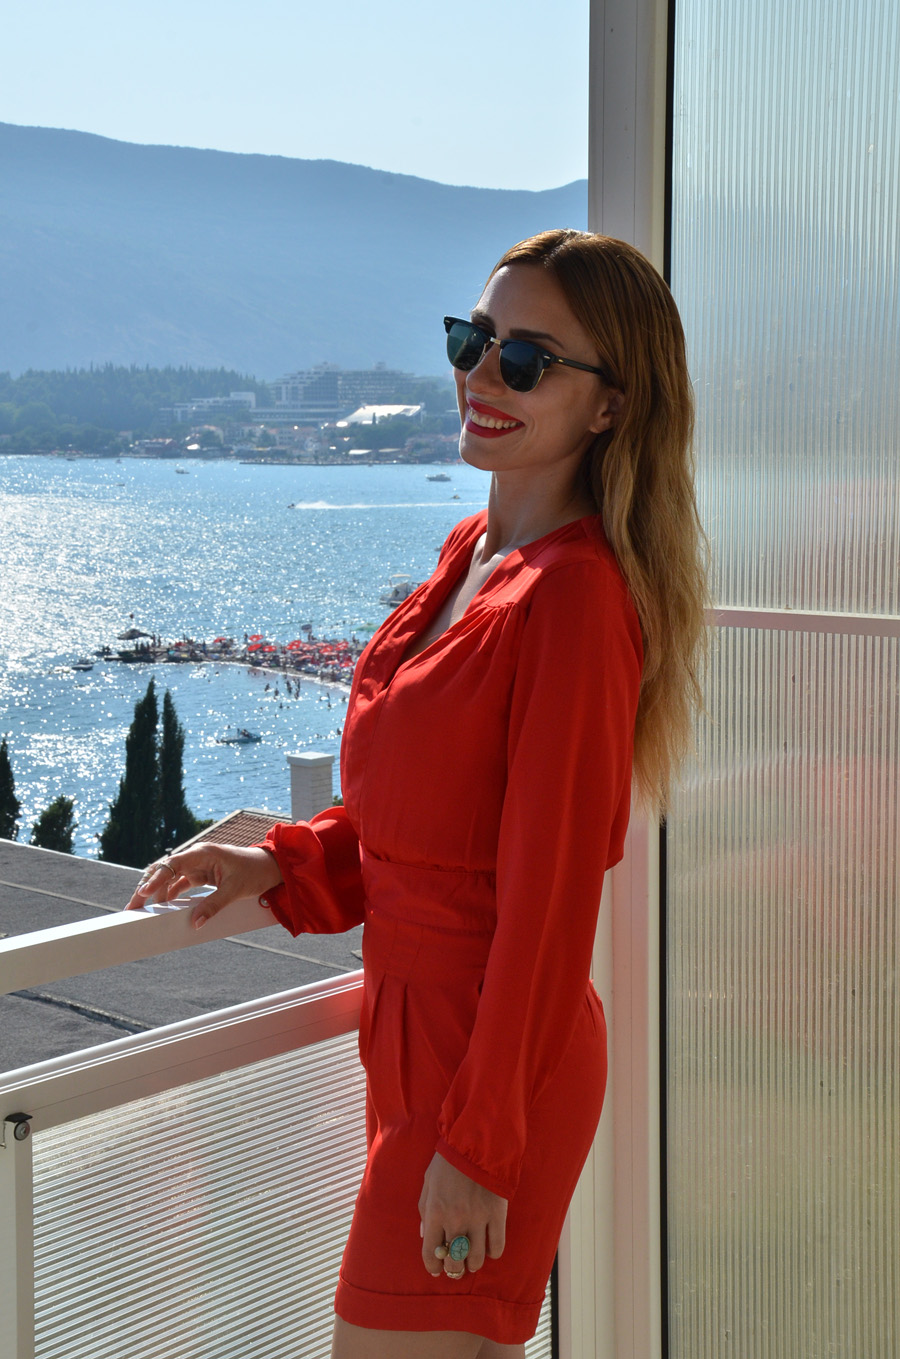 Red Romper / Stasha Fashion Blog by Anastasija